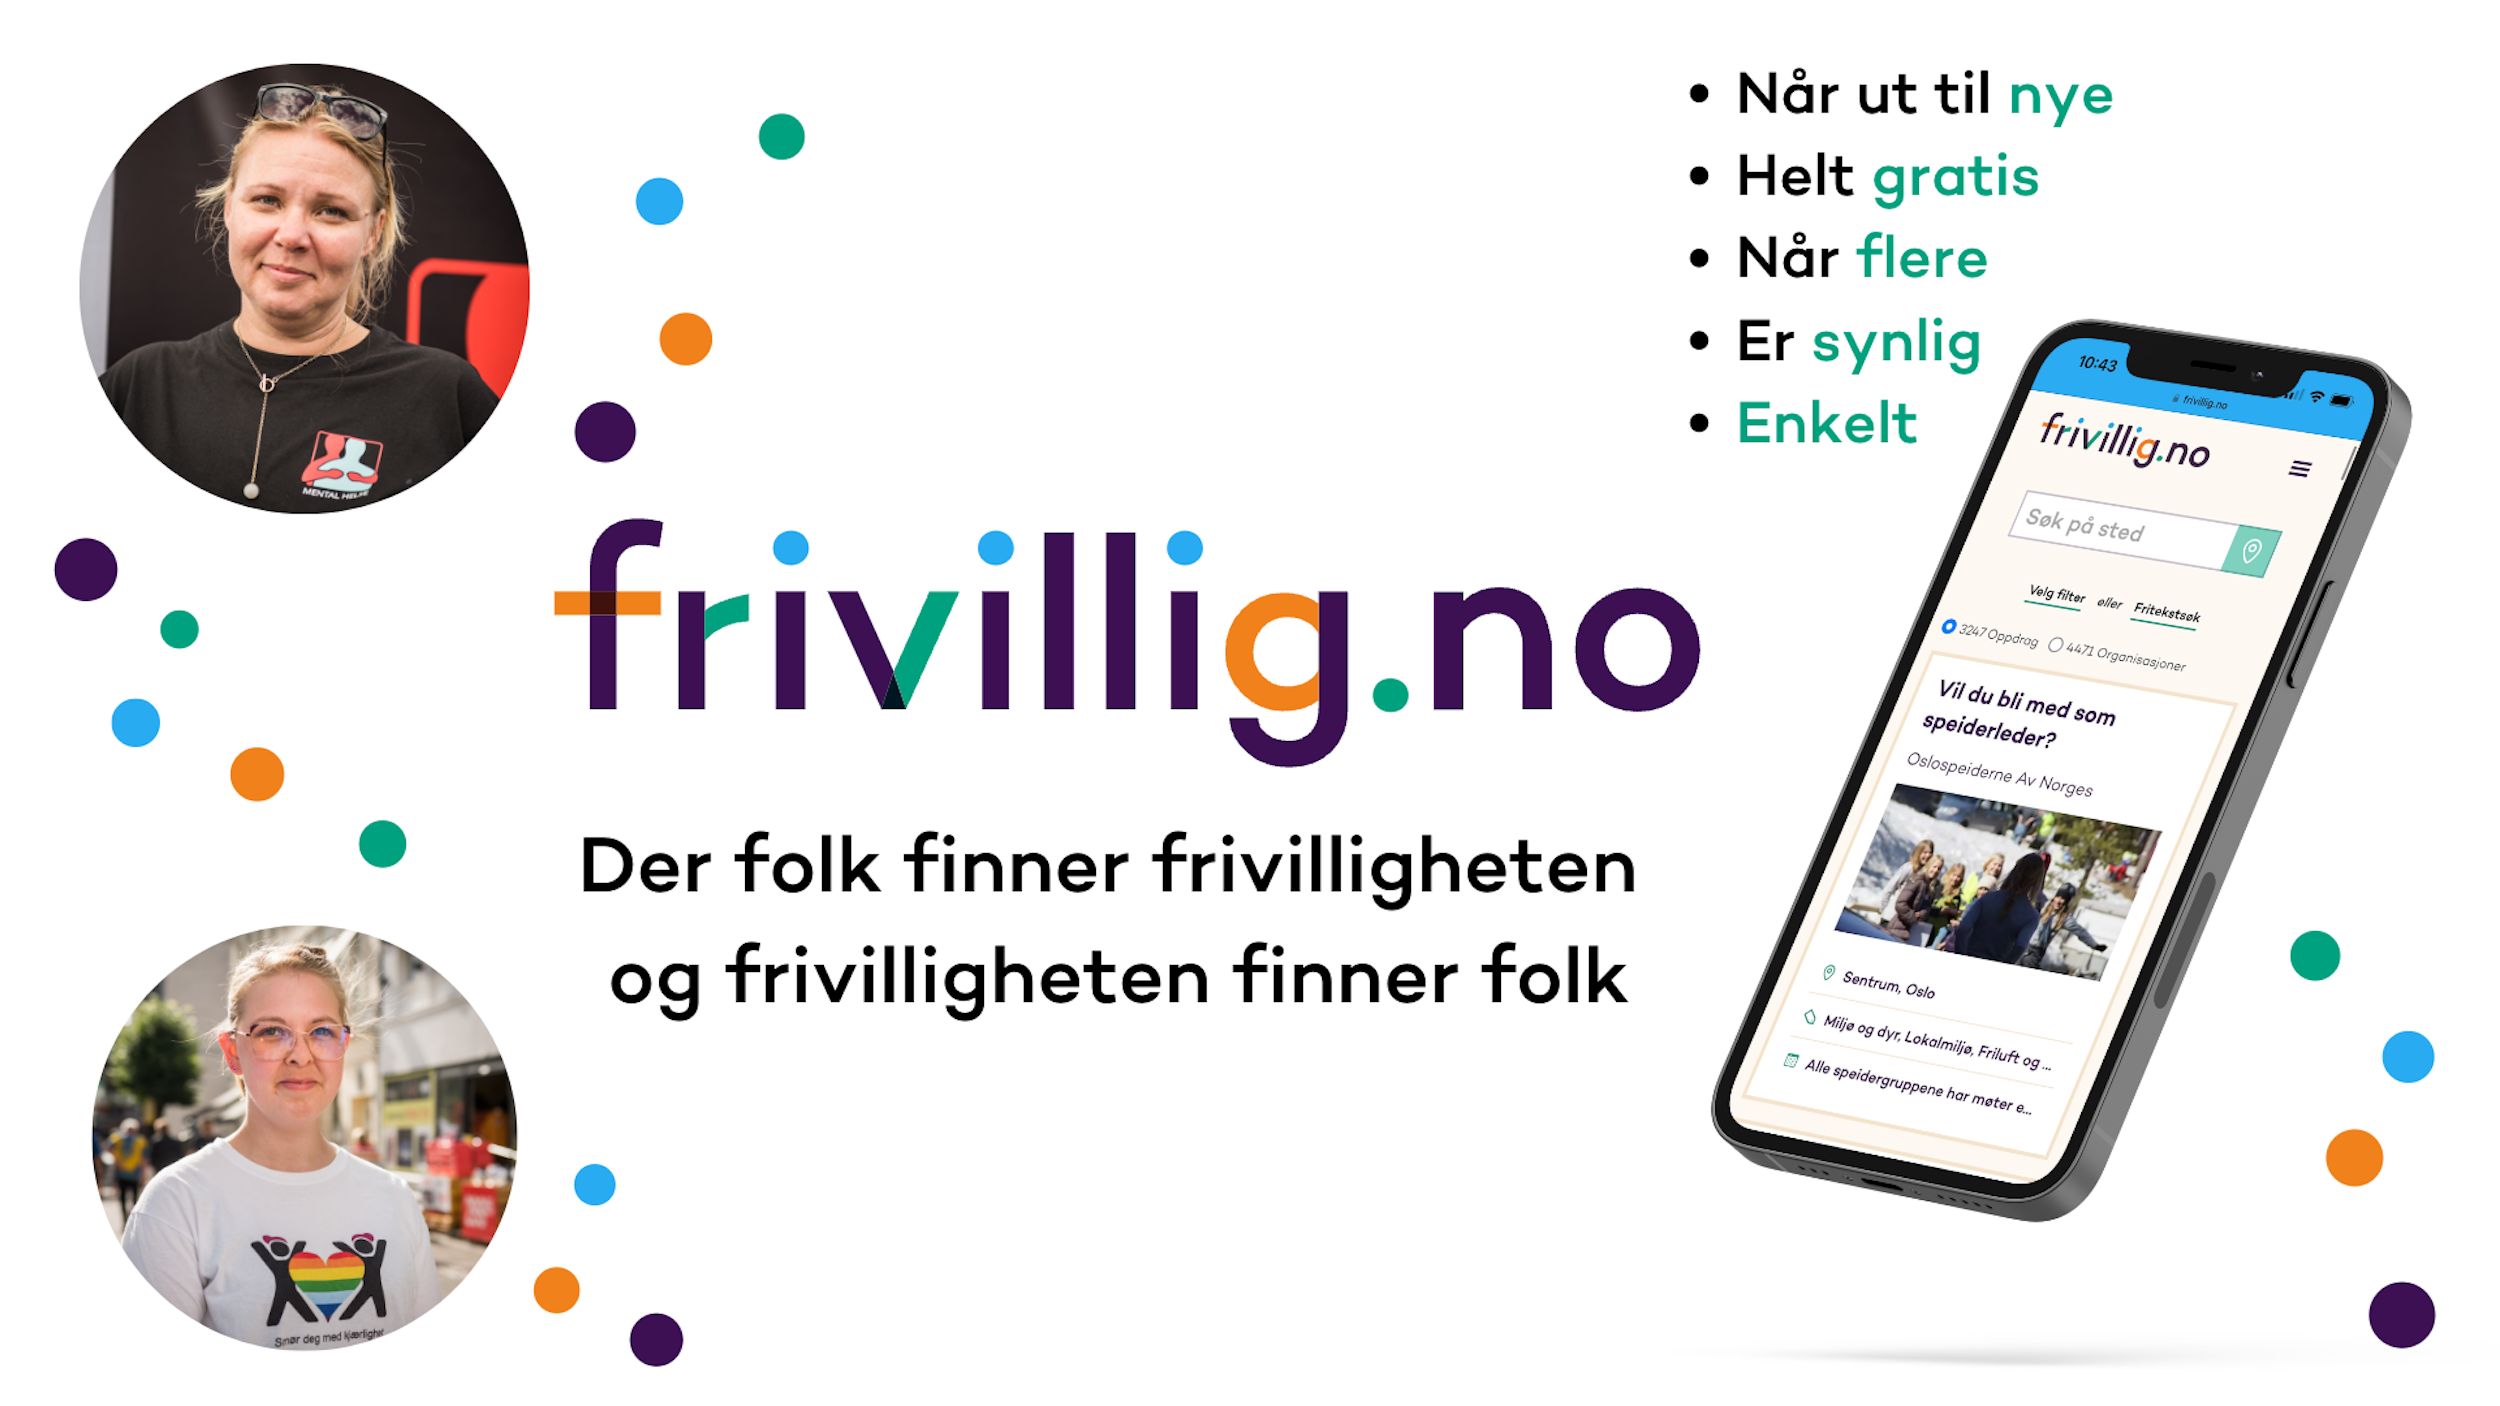 Bilde av frivillige og en telefon med nettsiden "Frivillig.no" oppe